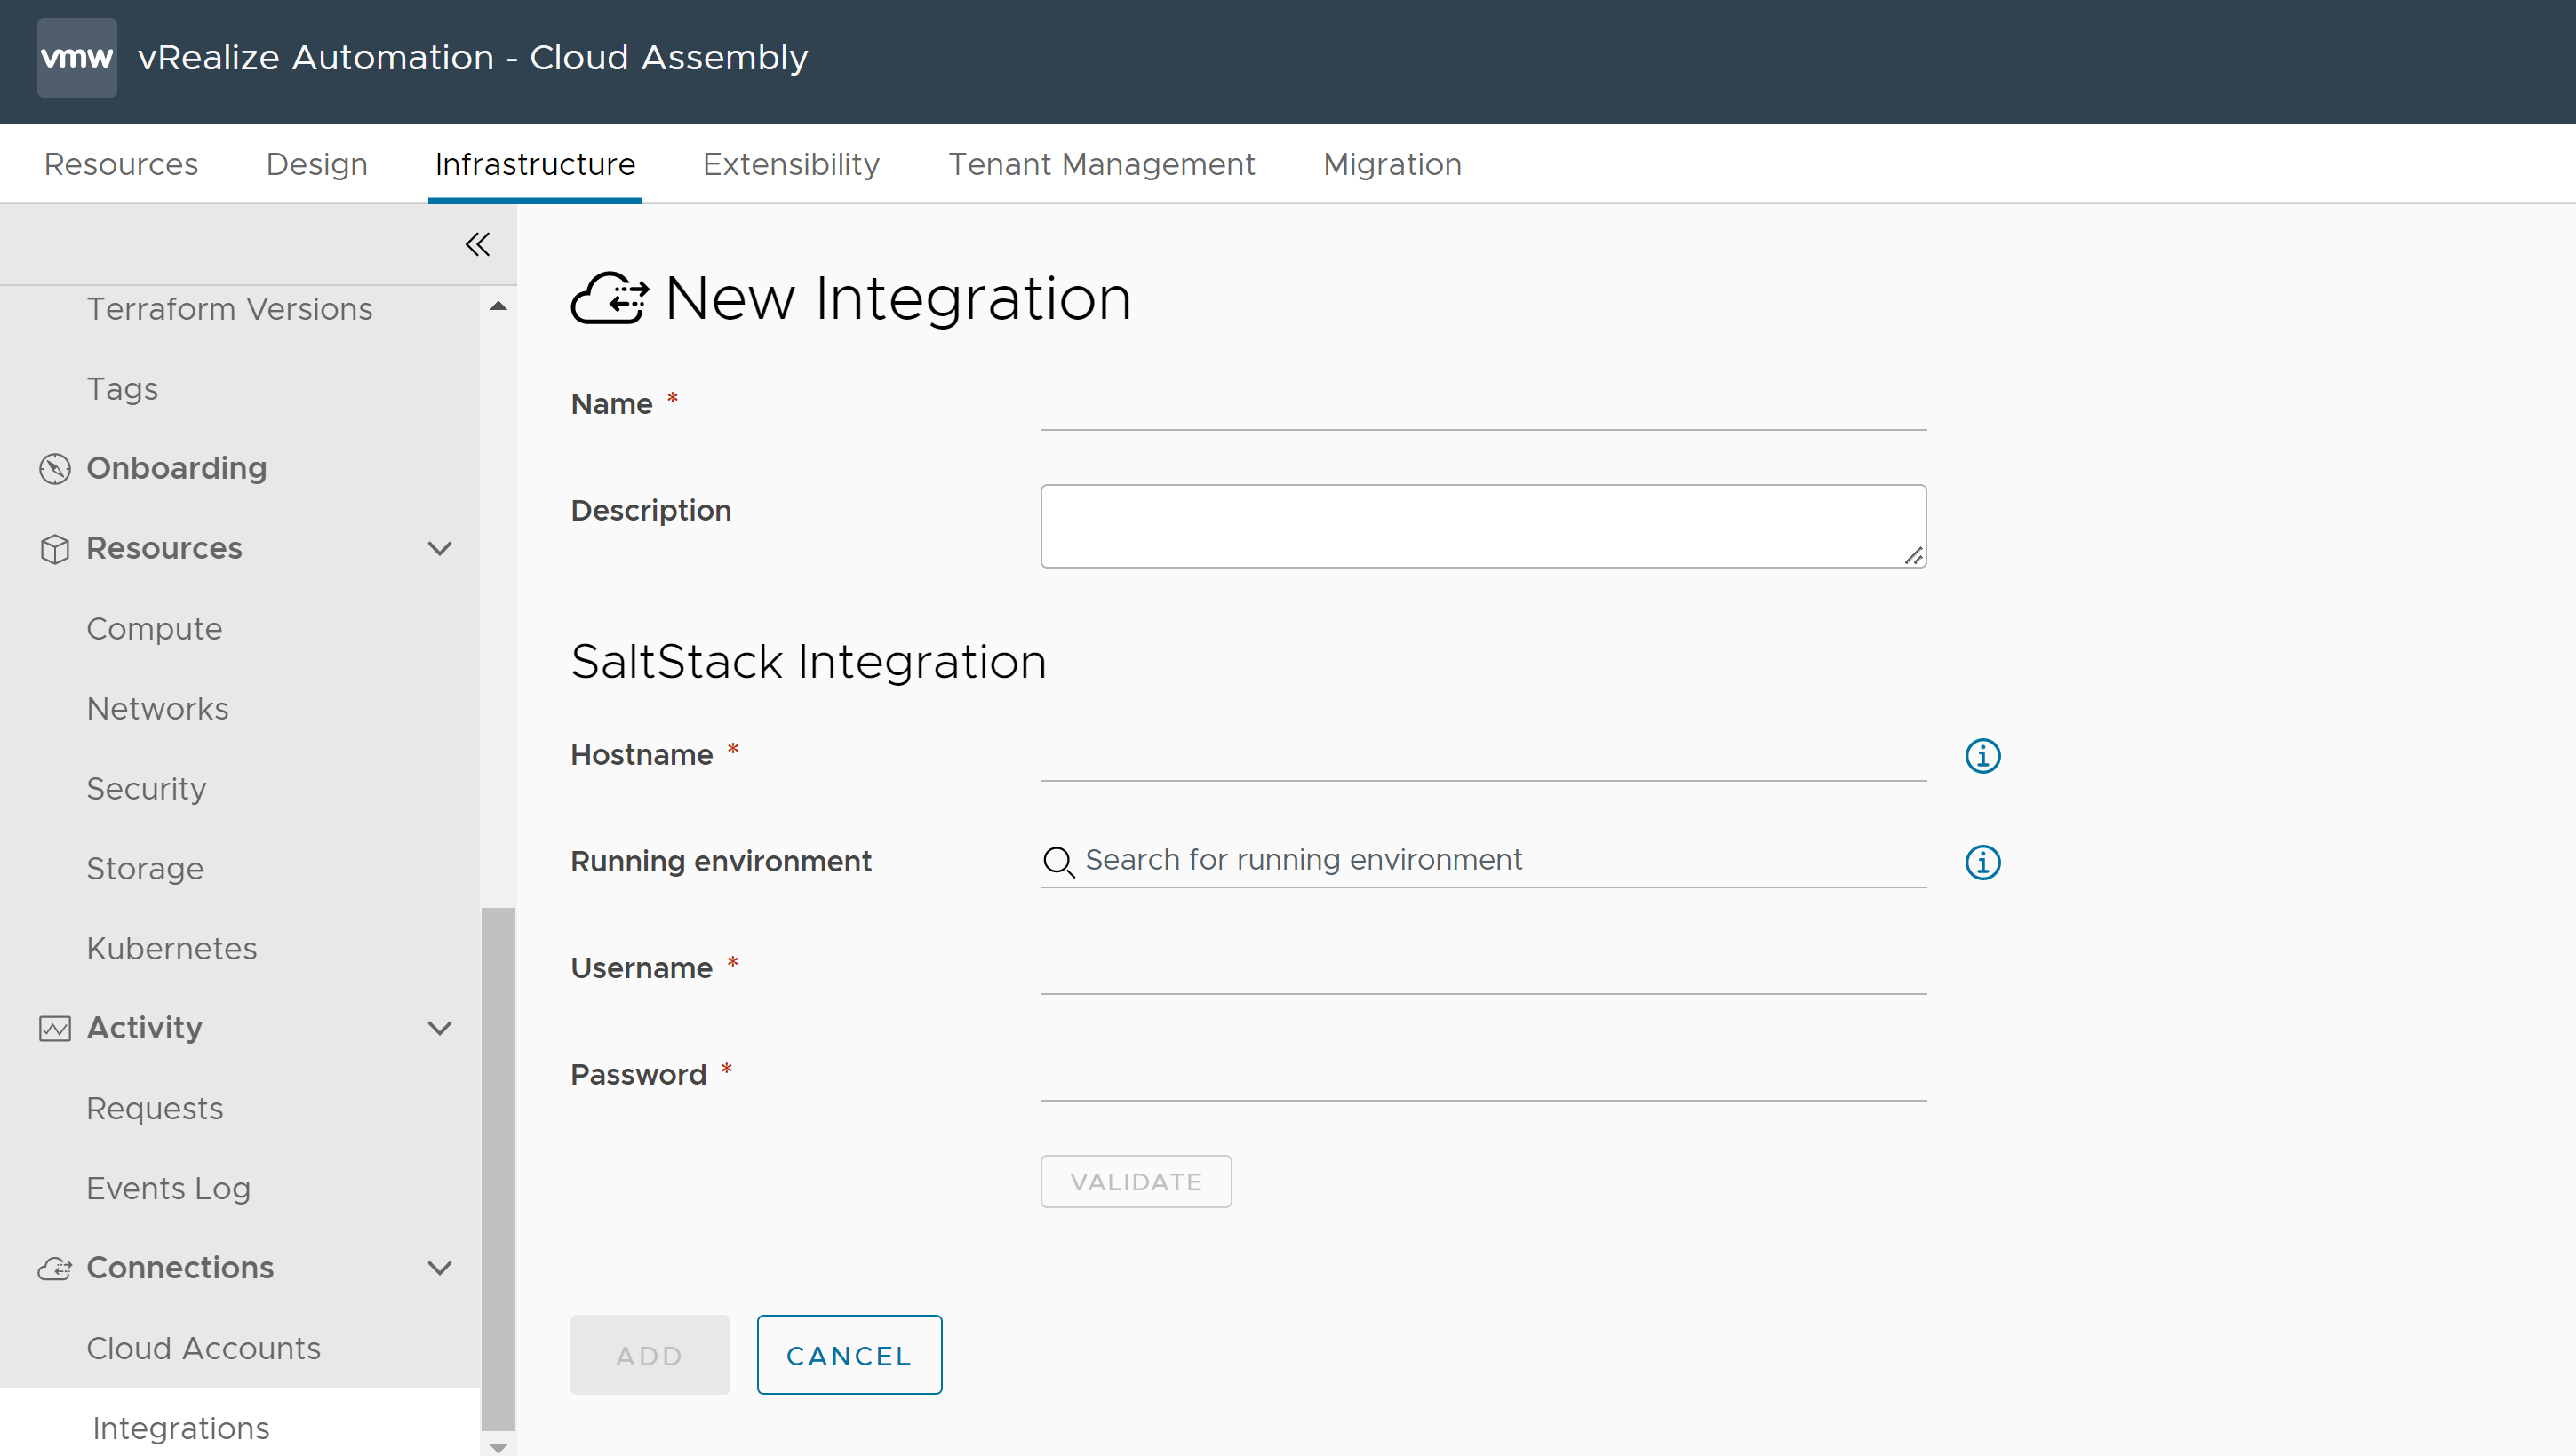 Formulario para crear una integración nueva en Cloud Assembly